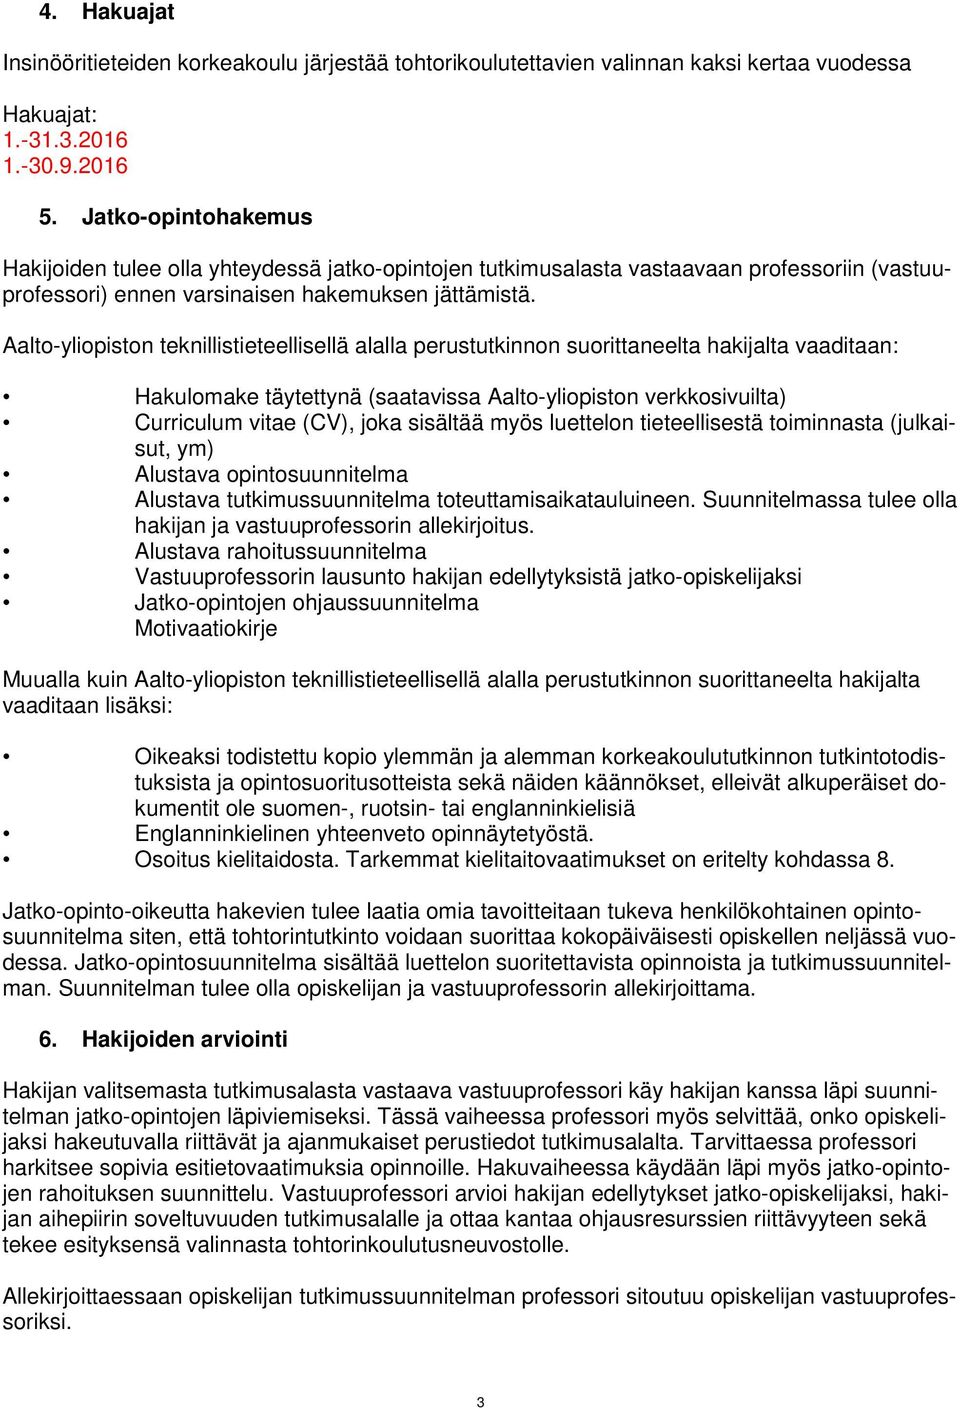 Aalto-yliopiston teknillistieteellisellä alalla perustutkinnon suorittaneelta hakijalta vaaditaan: Hakulomake täytettynä (saatavissa Aalto-yliopiston verkkosivuilta) Curriculum vitae (CV), joka